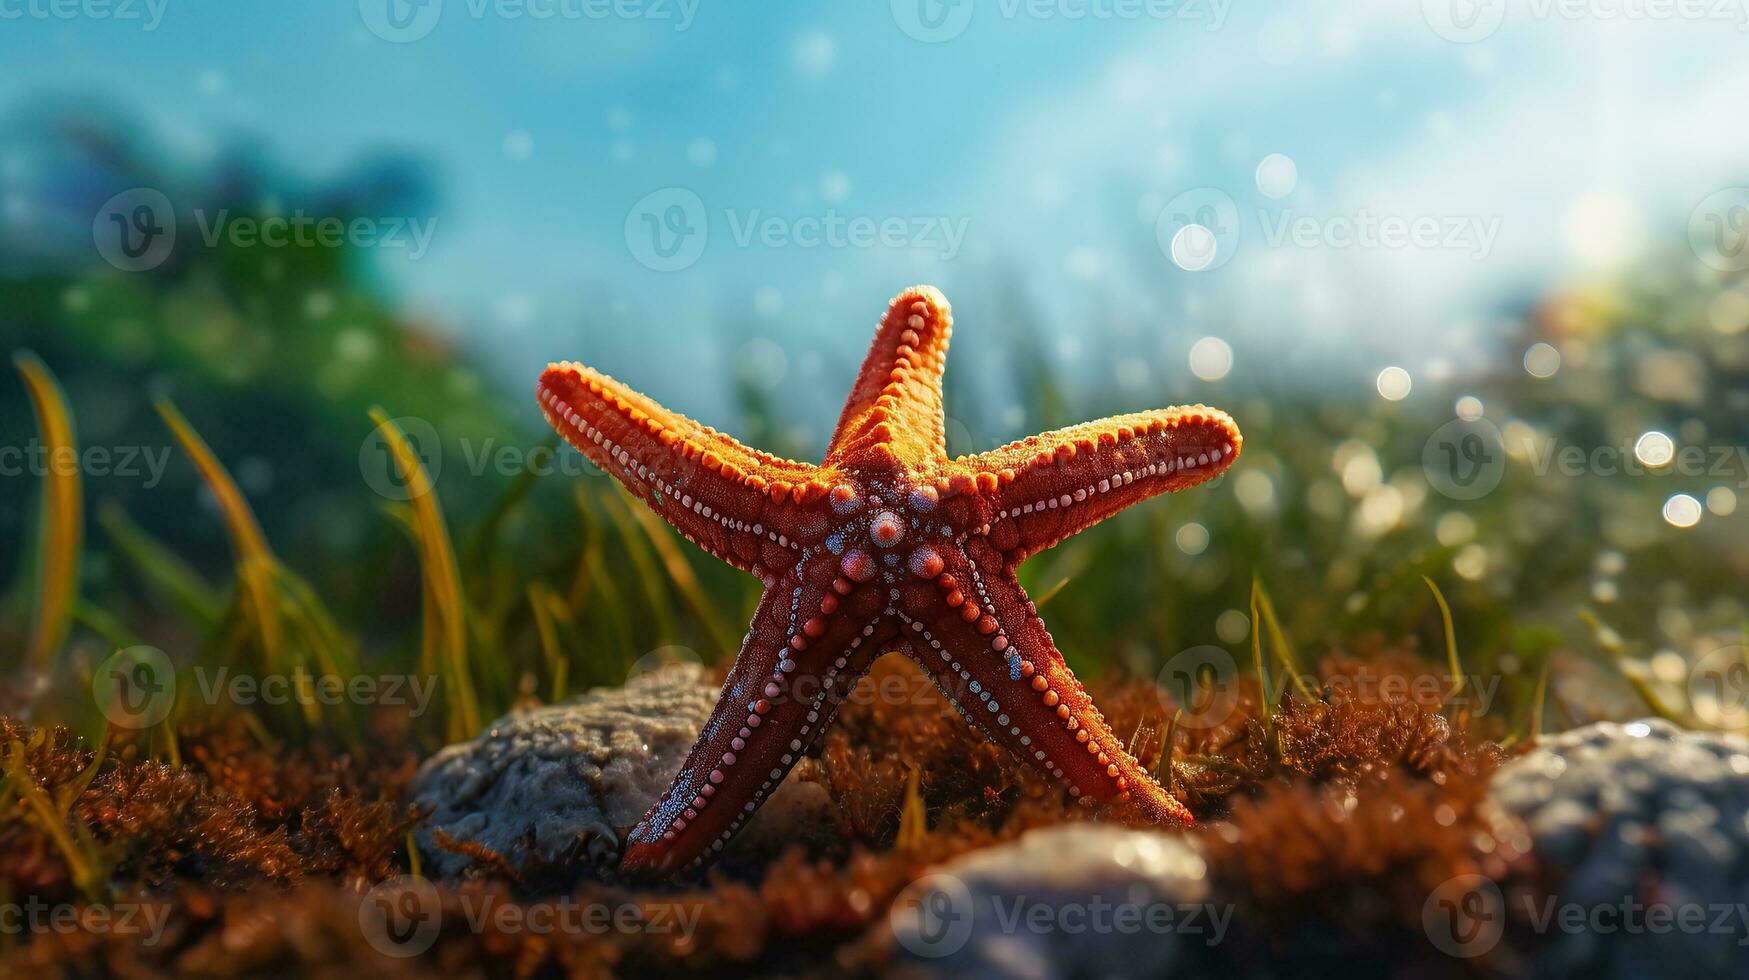 Starfish cartoon sticker in green background photo